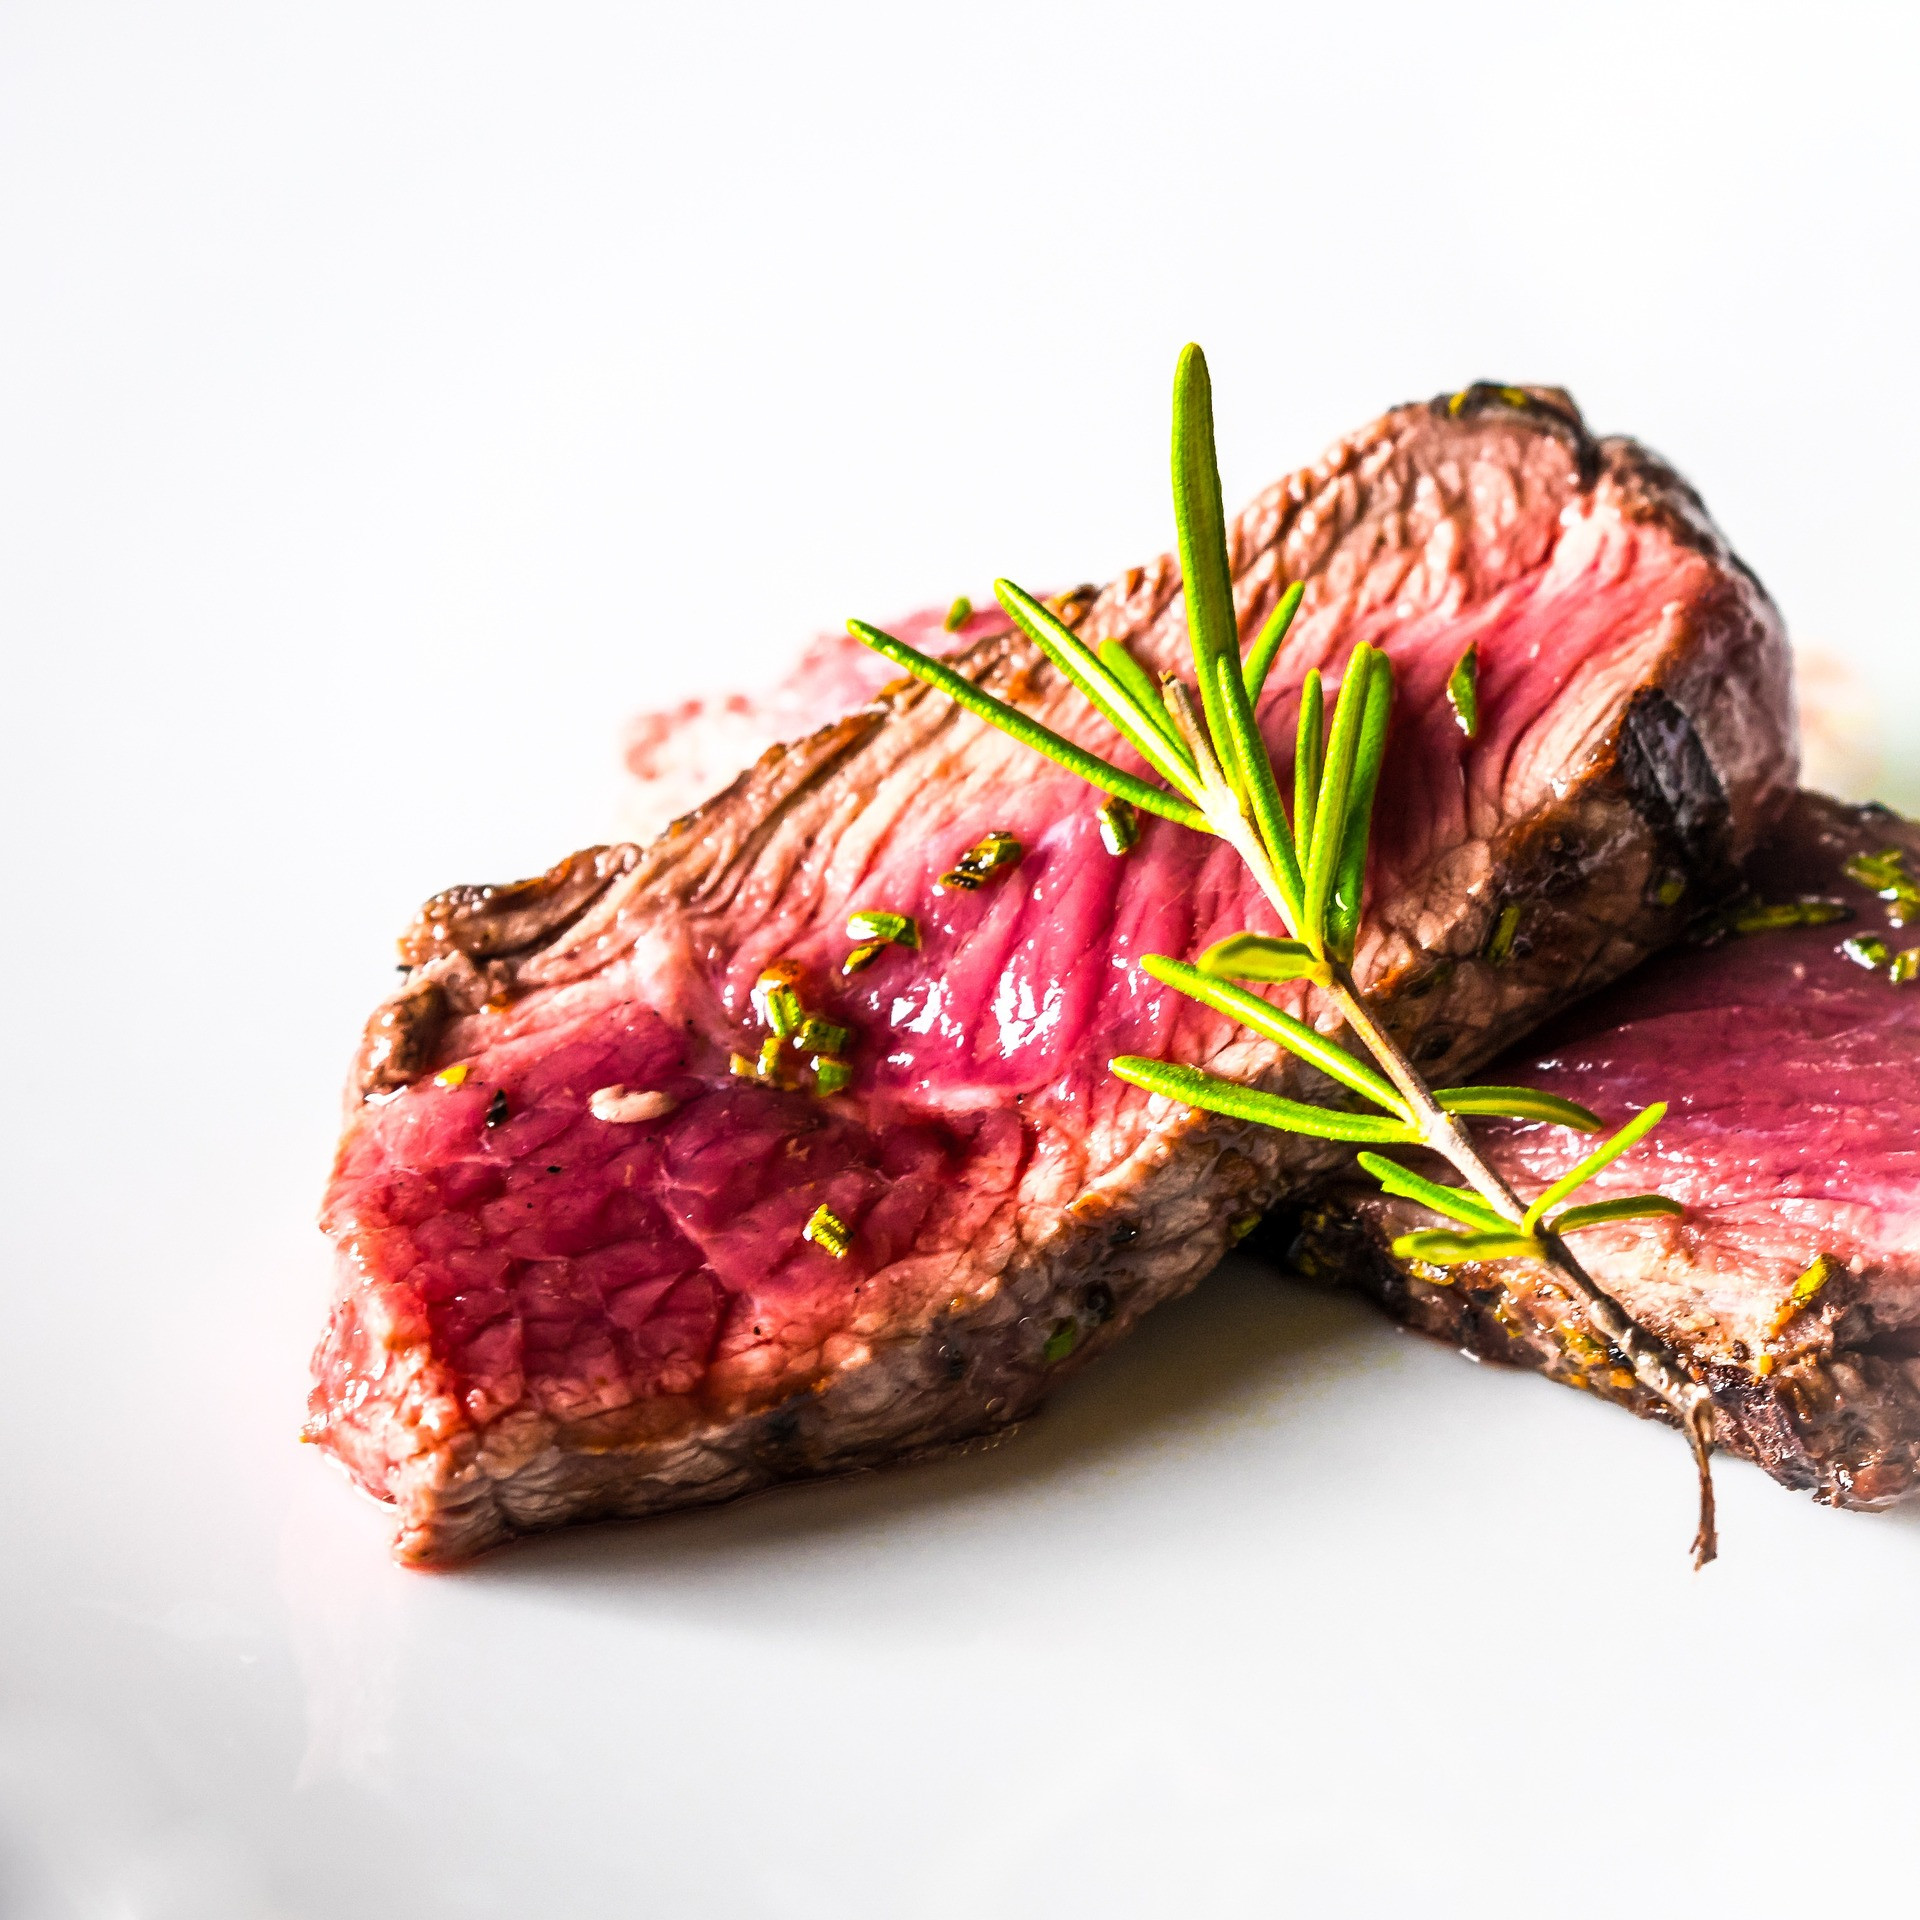 Najväčším prehreškom, ktorý spôsobuje najväčšie zdesenie medzi ozajstnými labužníkmi, je podľa mnohých prevarený steak. Objednávanie prepečeného steaku môže byť plytvaním dobrého mäsa a peňazí, najmä v reštaurácii, kde sa môžete spoľahnúť na drahšie a kvalitnejšie jedlá. Zvyčajne býva príliš tvrdý a suchý, aby ste si ho naozaj vychutnali. Štúdia z roku 2013 tiež naznačuje, že glykotoxíny, ktoré sú vo veľkom množstve zastúpené v prepečenom mäse, môžu byť rizikovým faktorom pri rozvoji ochorení mozgu, ako je napríklad Alzheimerova choroba. Navyše naňho budete čakať dvakrát dlhšie ako na iné jedlo. To jednoducho nestojí za to.